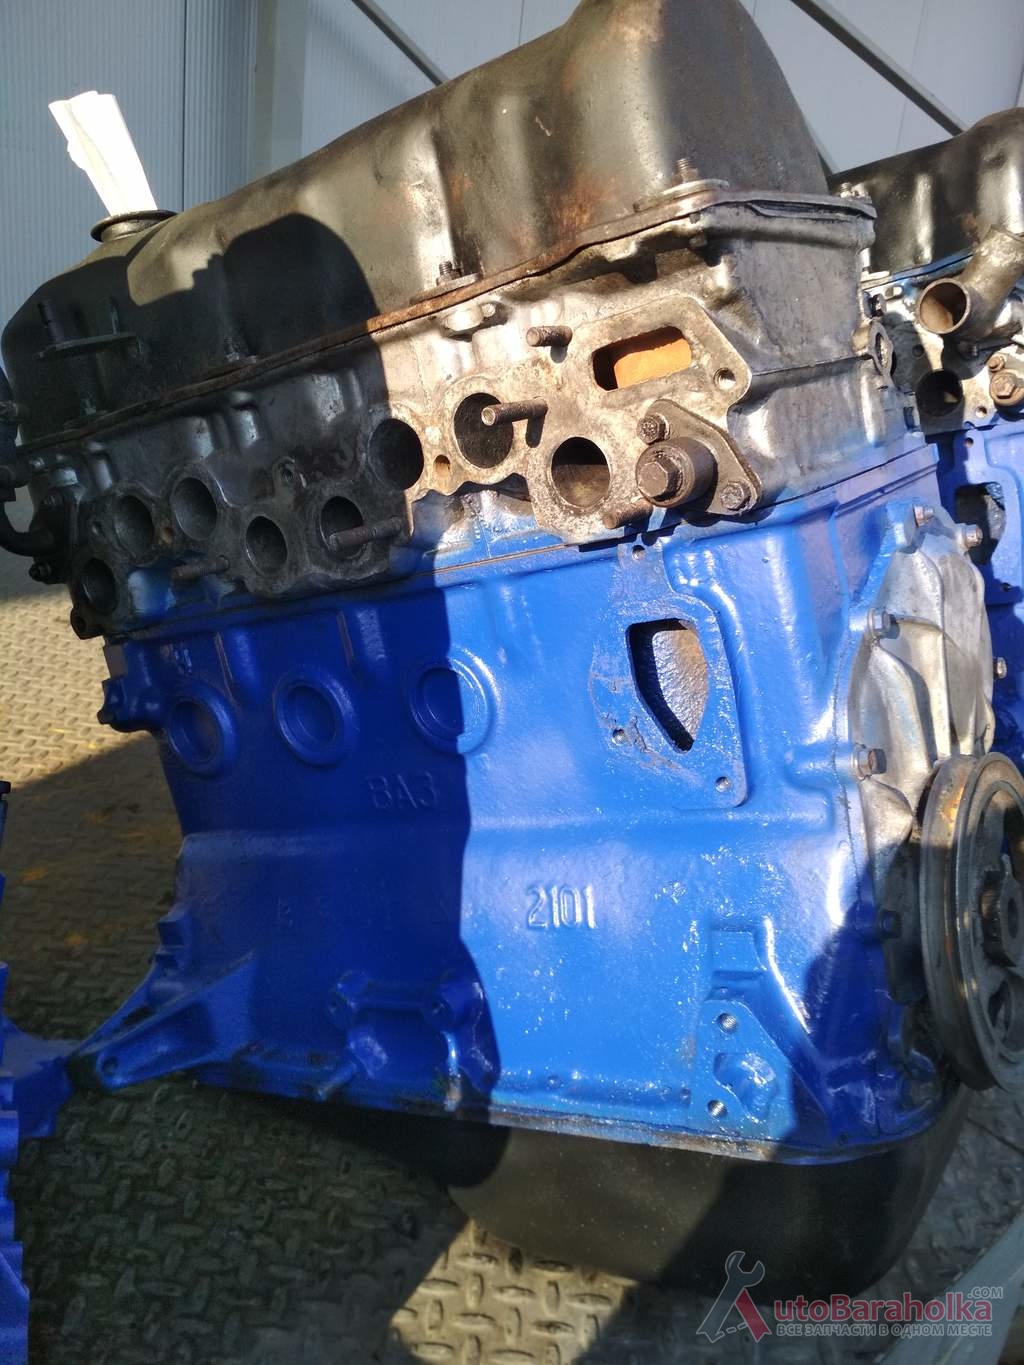 Продам Двигатель ВАЗ 2101 2103 21011 2106 2121 21213 из Словакии. проверенный. высокая компрессия. Гарантия Полтава